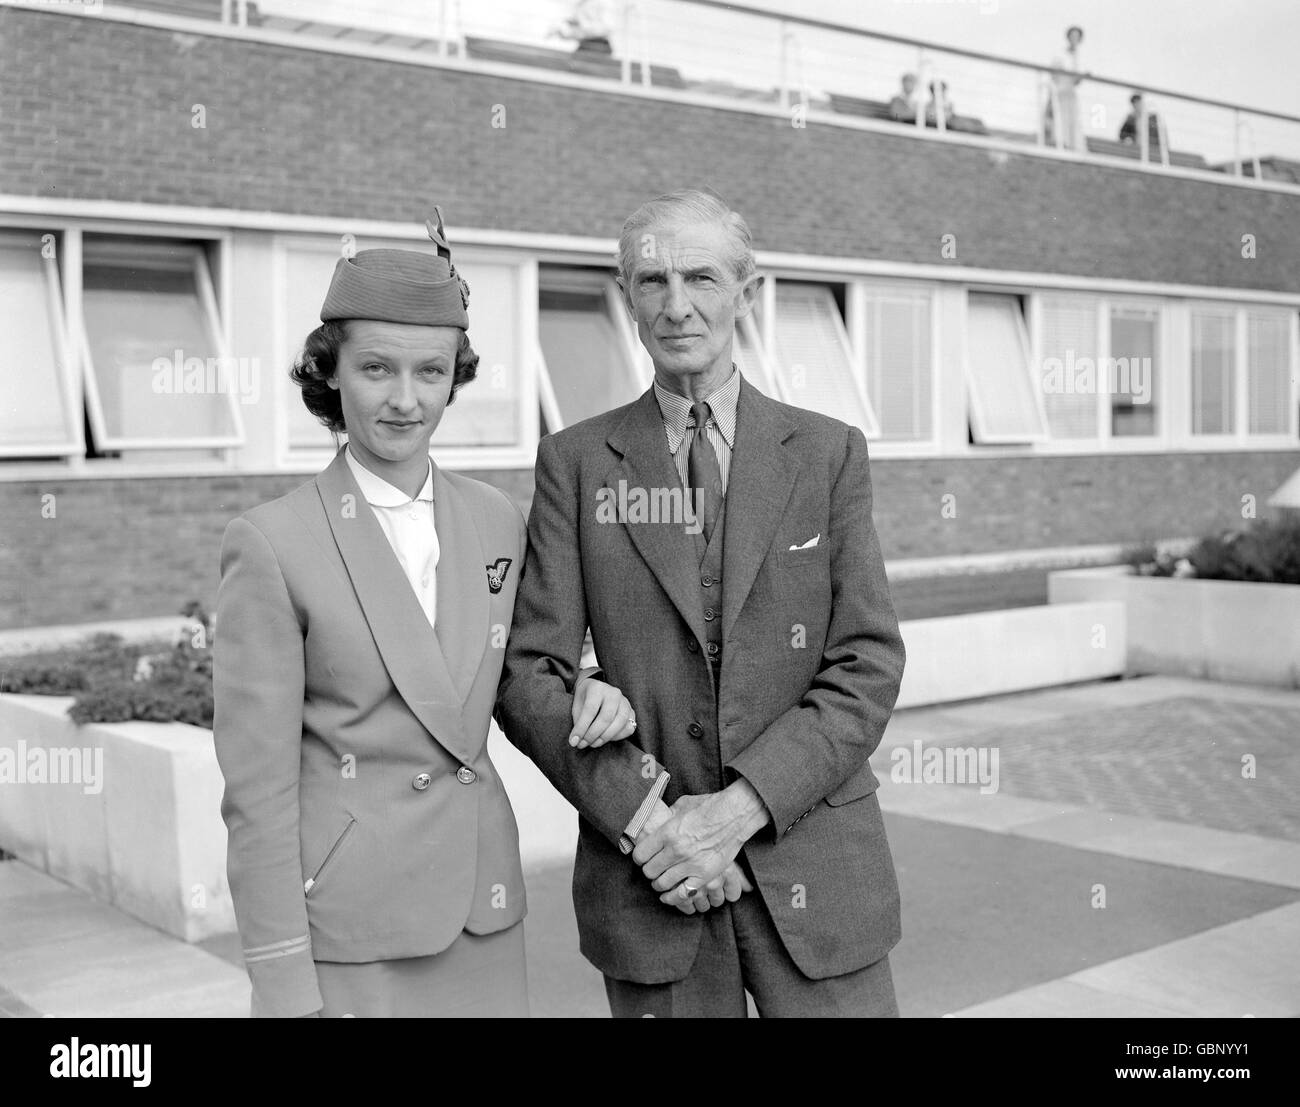 Susan Cramsie, dirigente della British European Airways presso l'aeroporto di Londra, con suo padre, allenatore di cavalli da corsa JRB Cramsie. È stata gravemente ferita quando una bomba è esplosa in un aereo vichingo di Parigi. Foto Stock